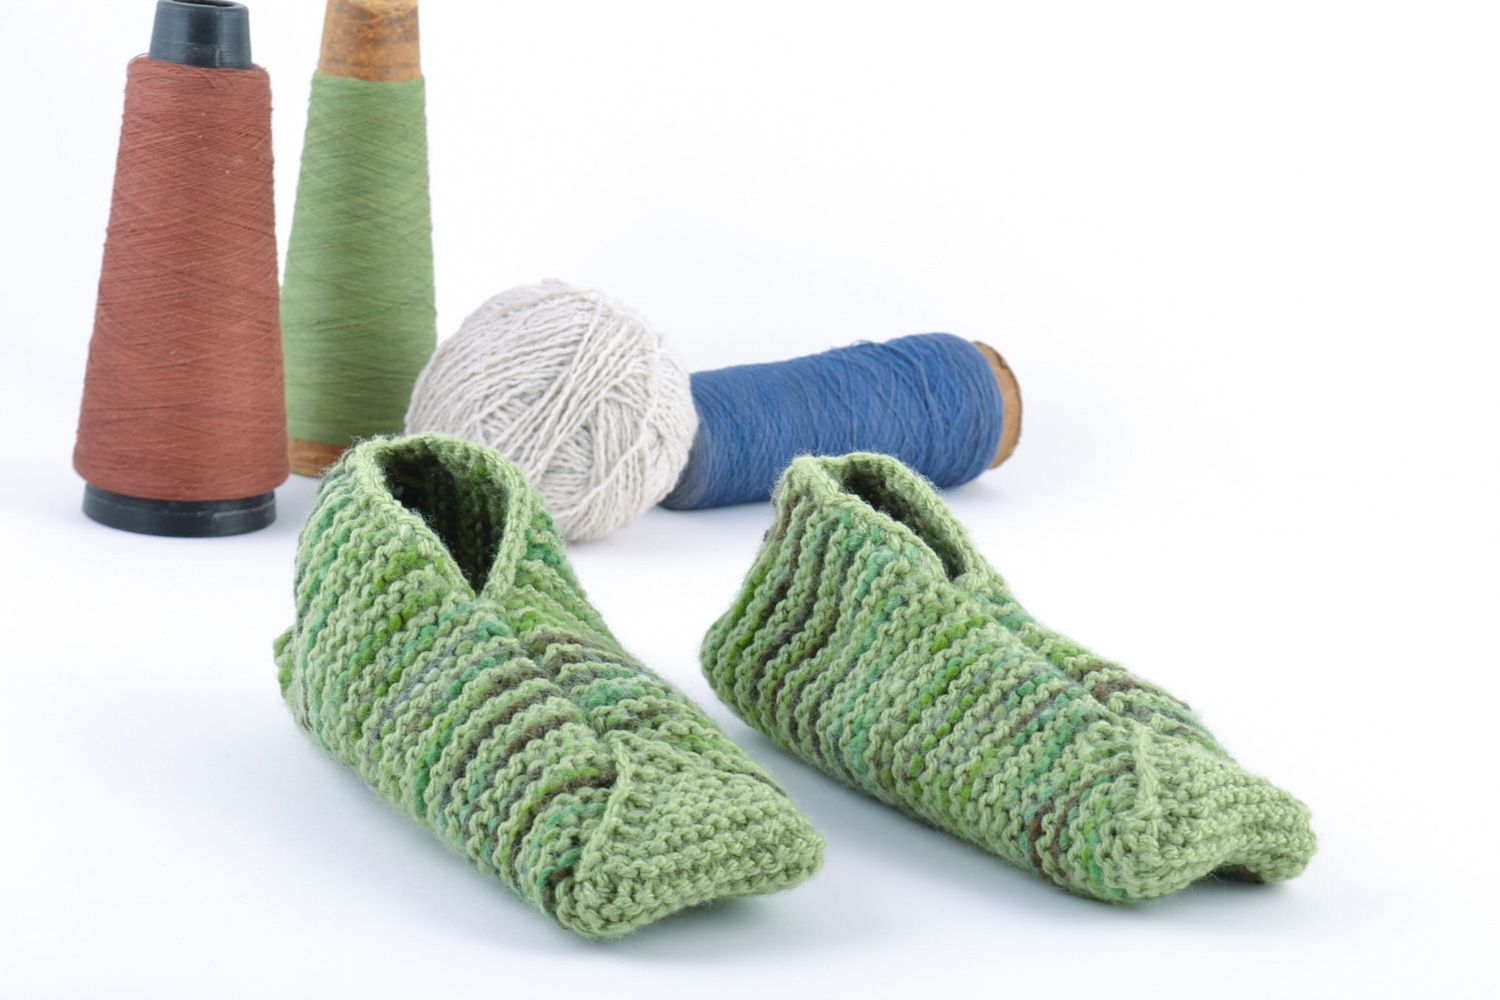 Pantuflas de lana mezclada para casa hechas a mano verdes claras para adultos y niños foto 1